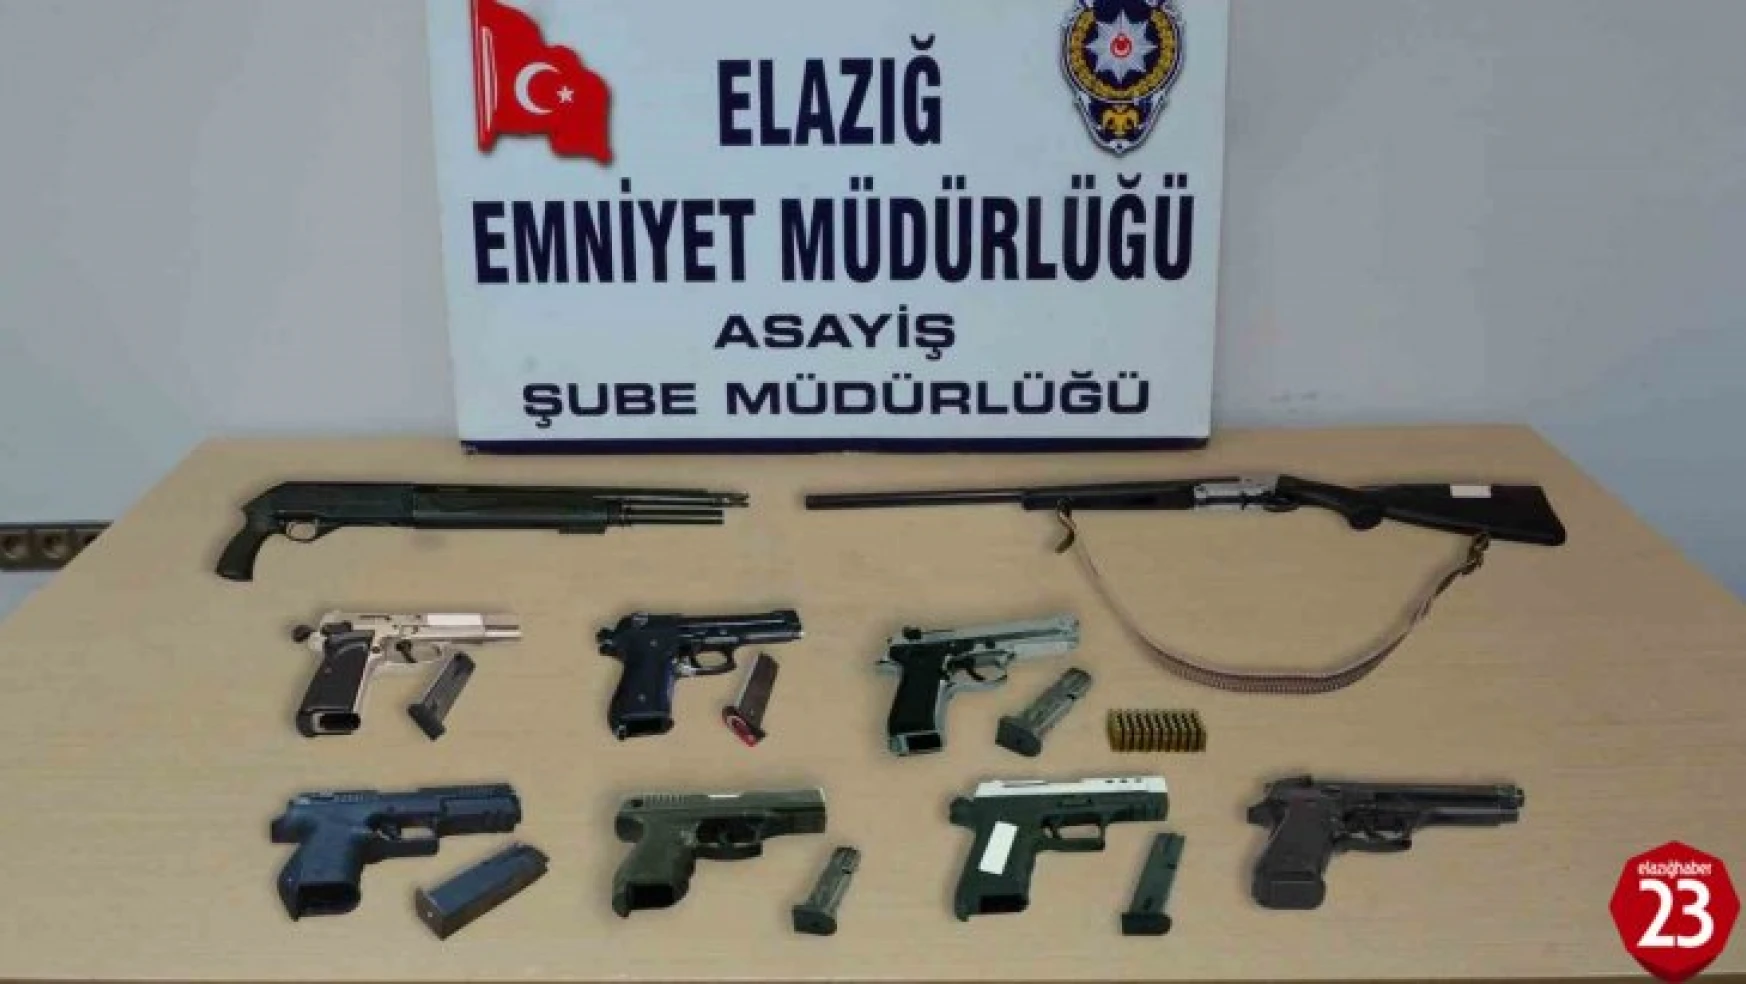 Elazığ'da asayiş ve şok uygulaması: 24 şüpheli tutuklandı